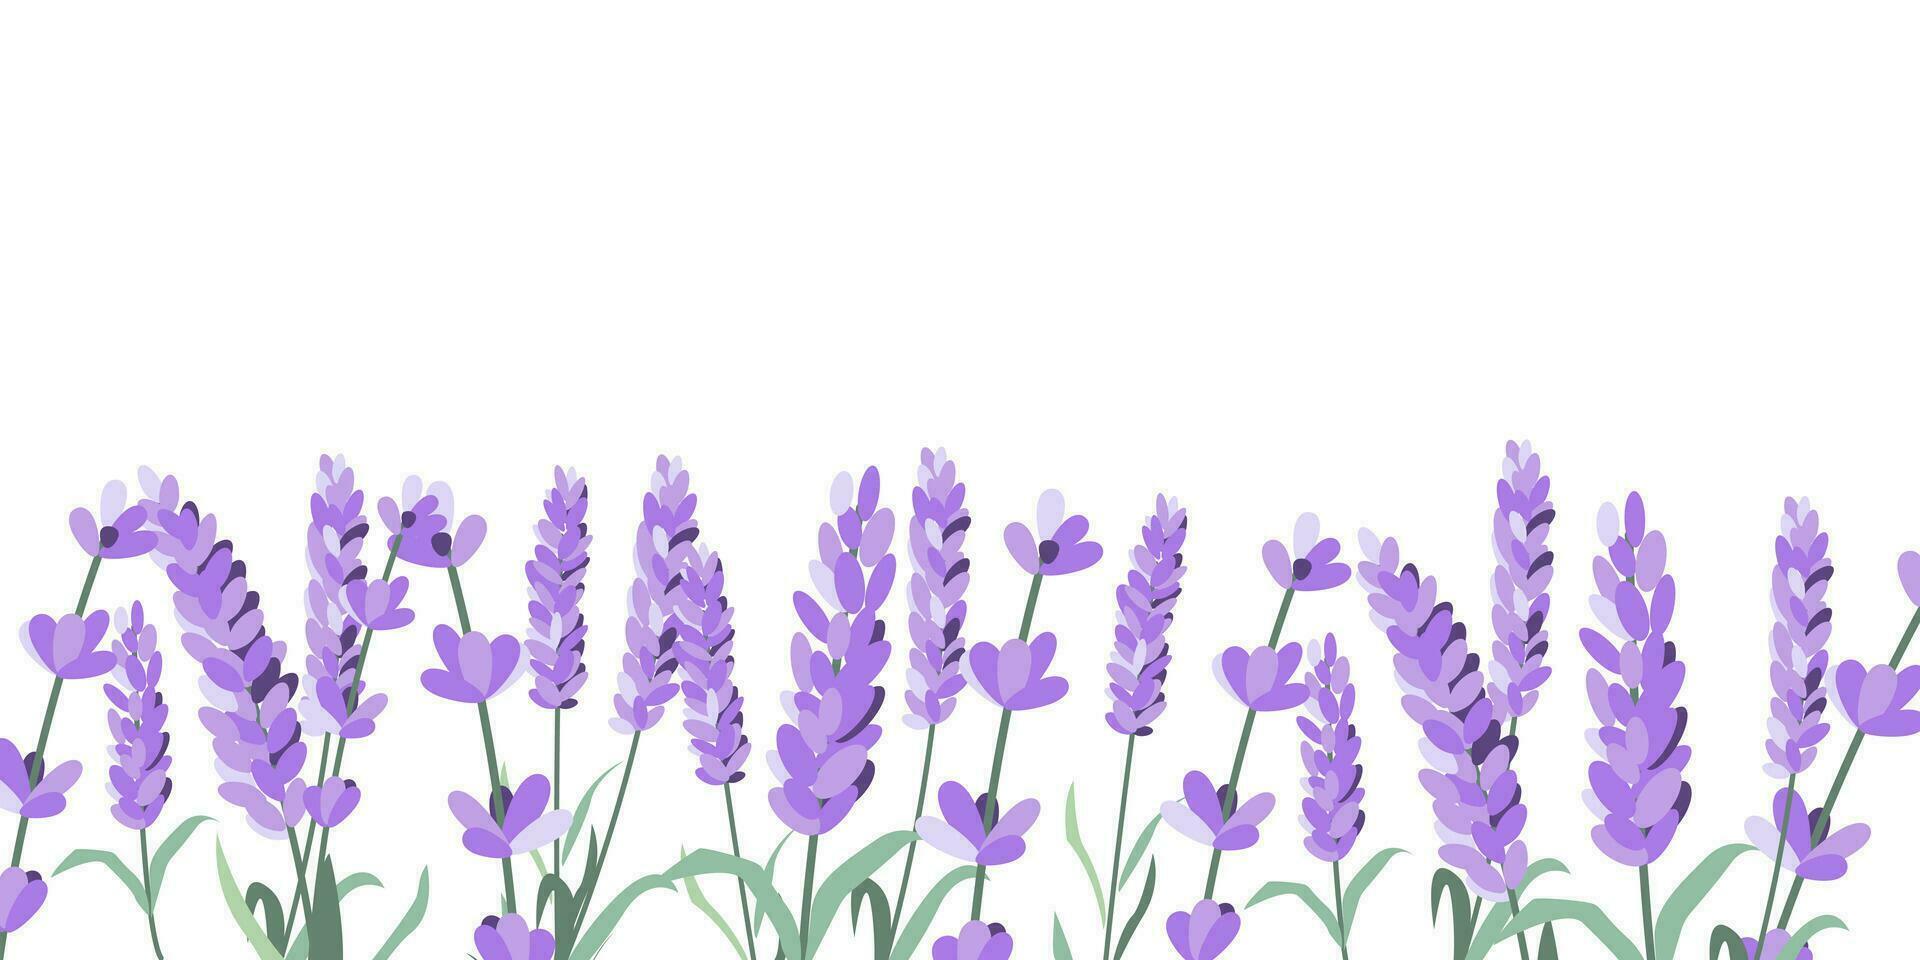 lavendel bloemen elementen. lavendel achtergrond. verzameling van lavendel bloemen vector